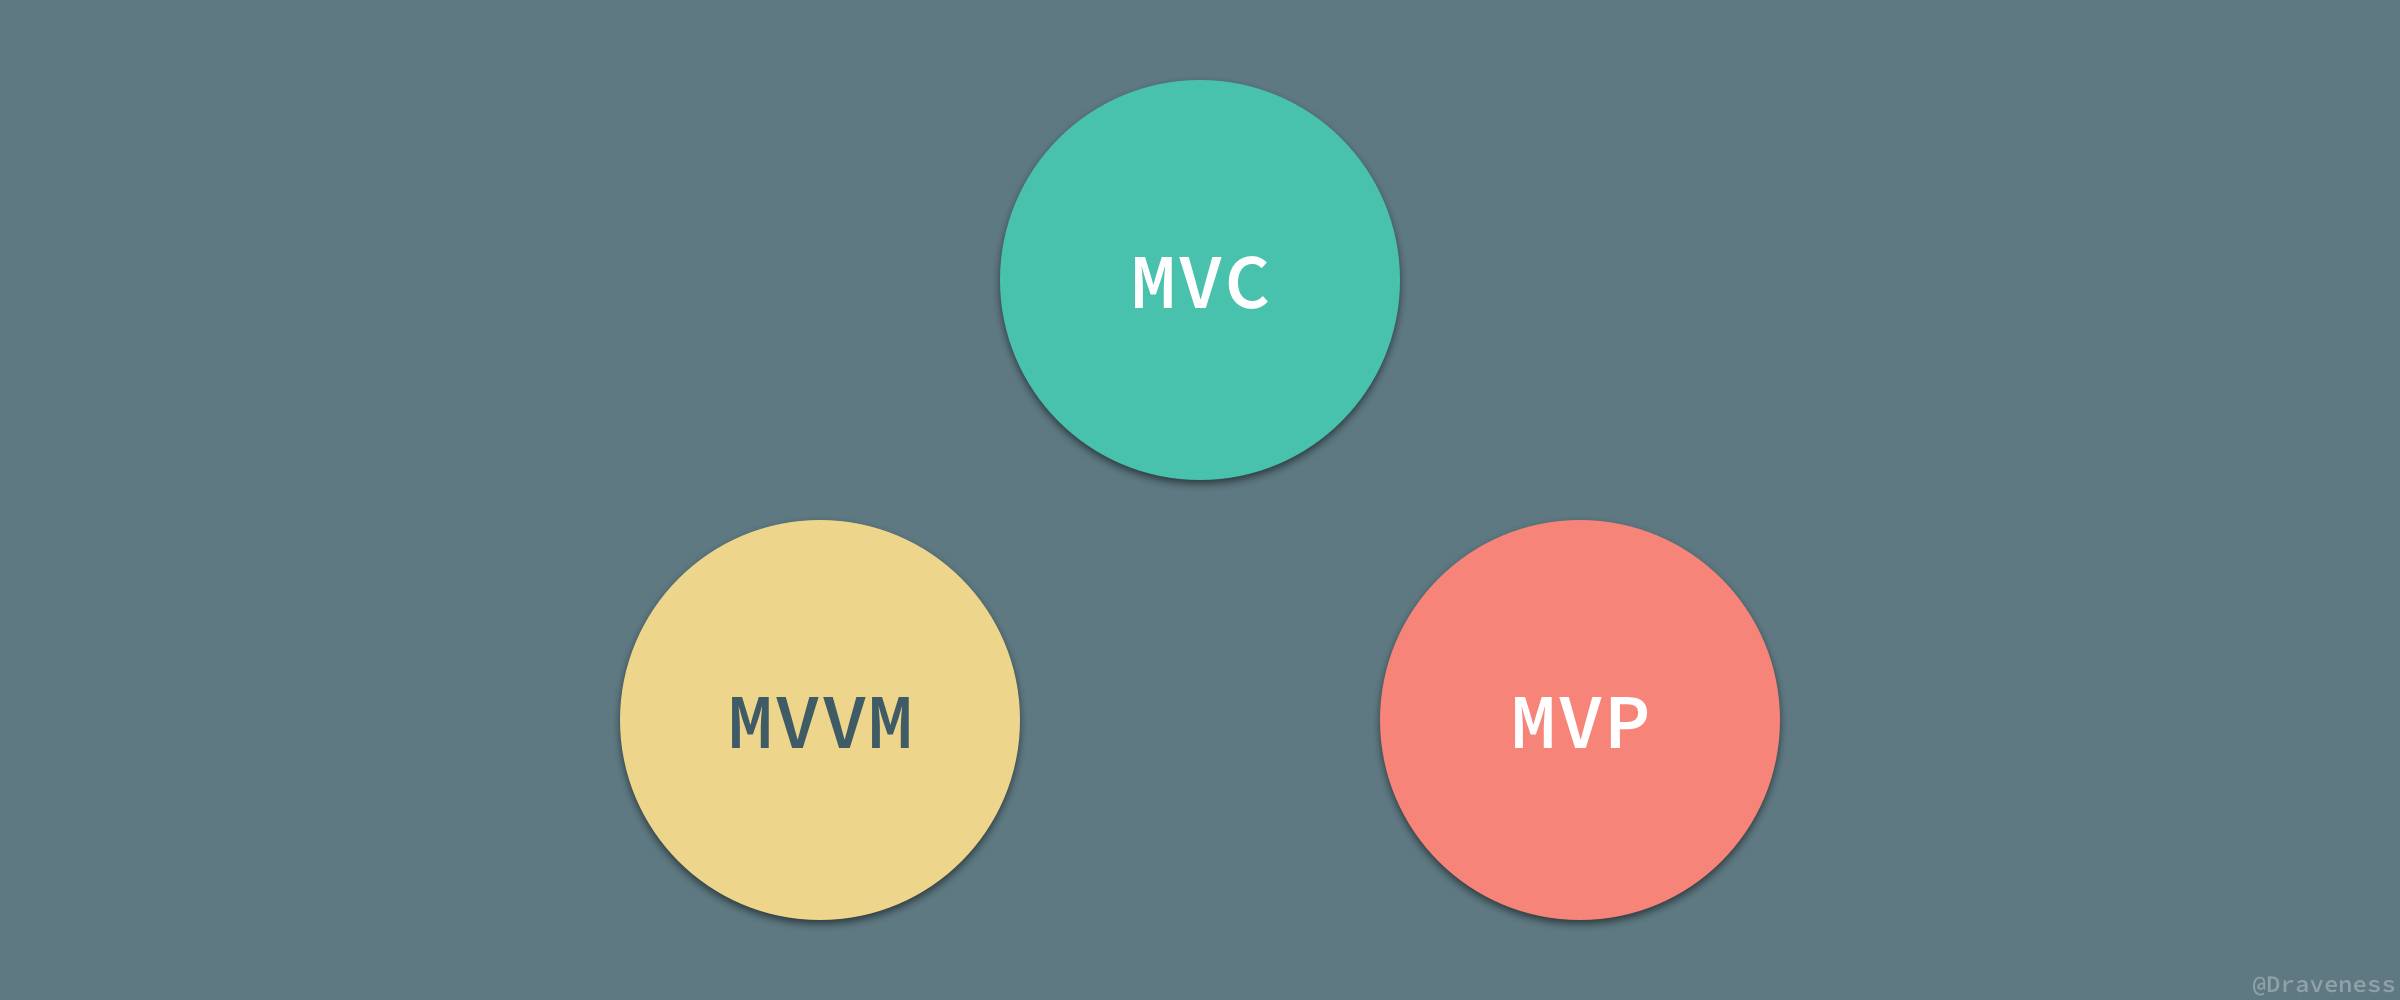 MVC-MVVM-MVP